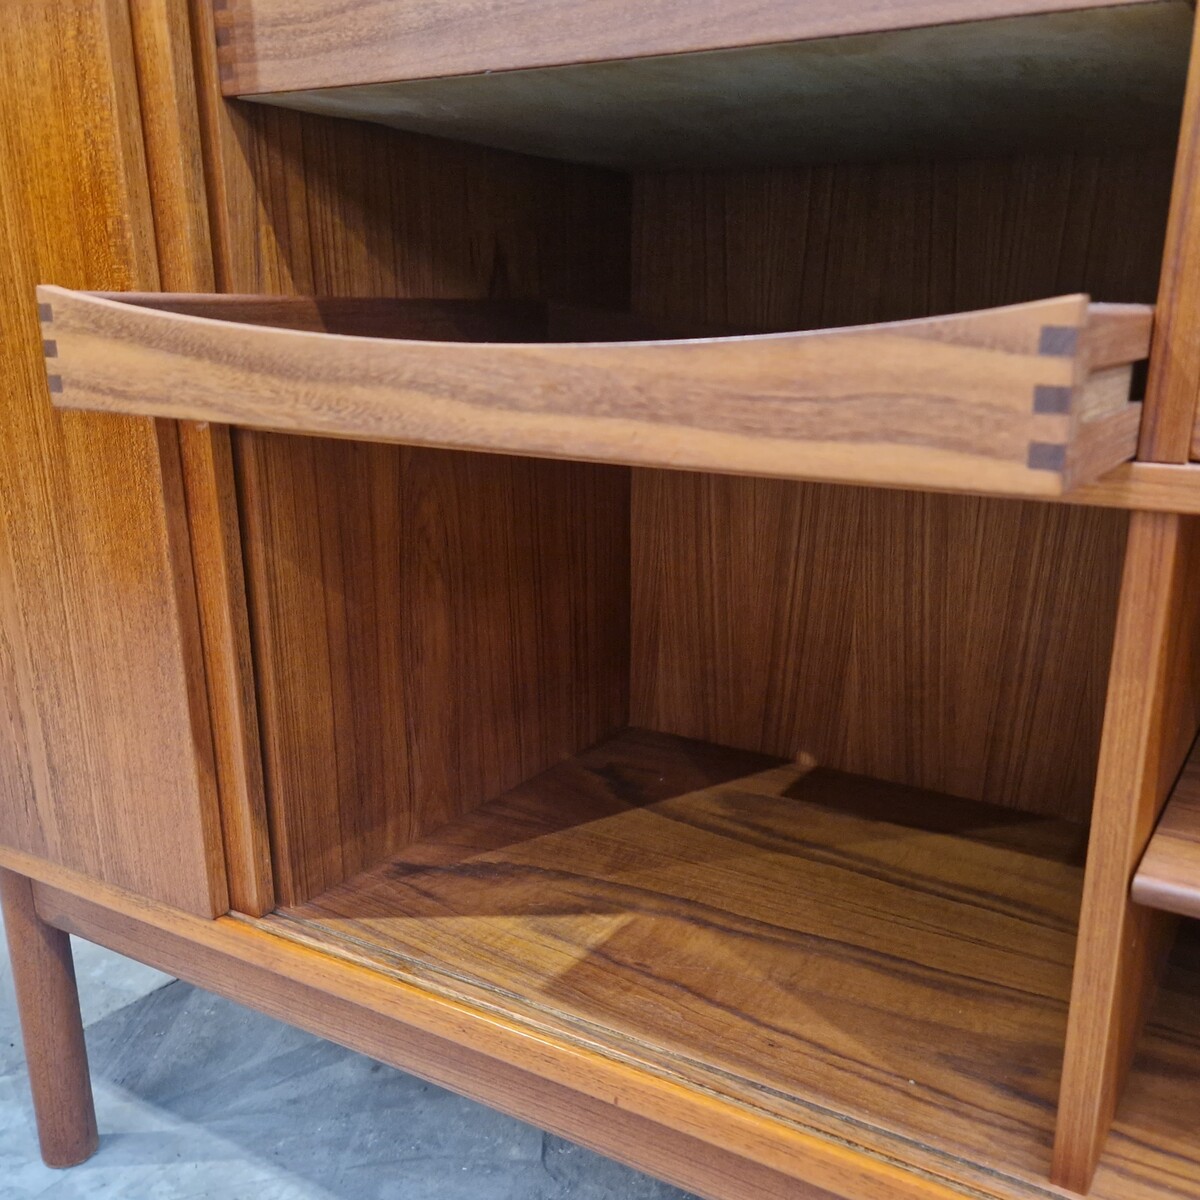 Very low teak vintage danish sideboard, ideal flat screen cabinet, 2 sliding doors, 6 drawers